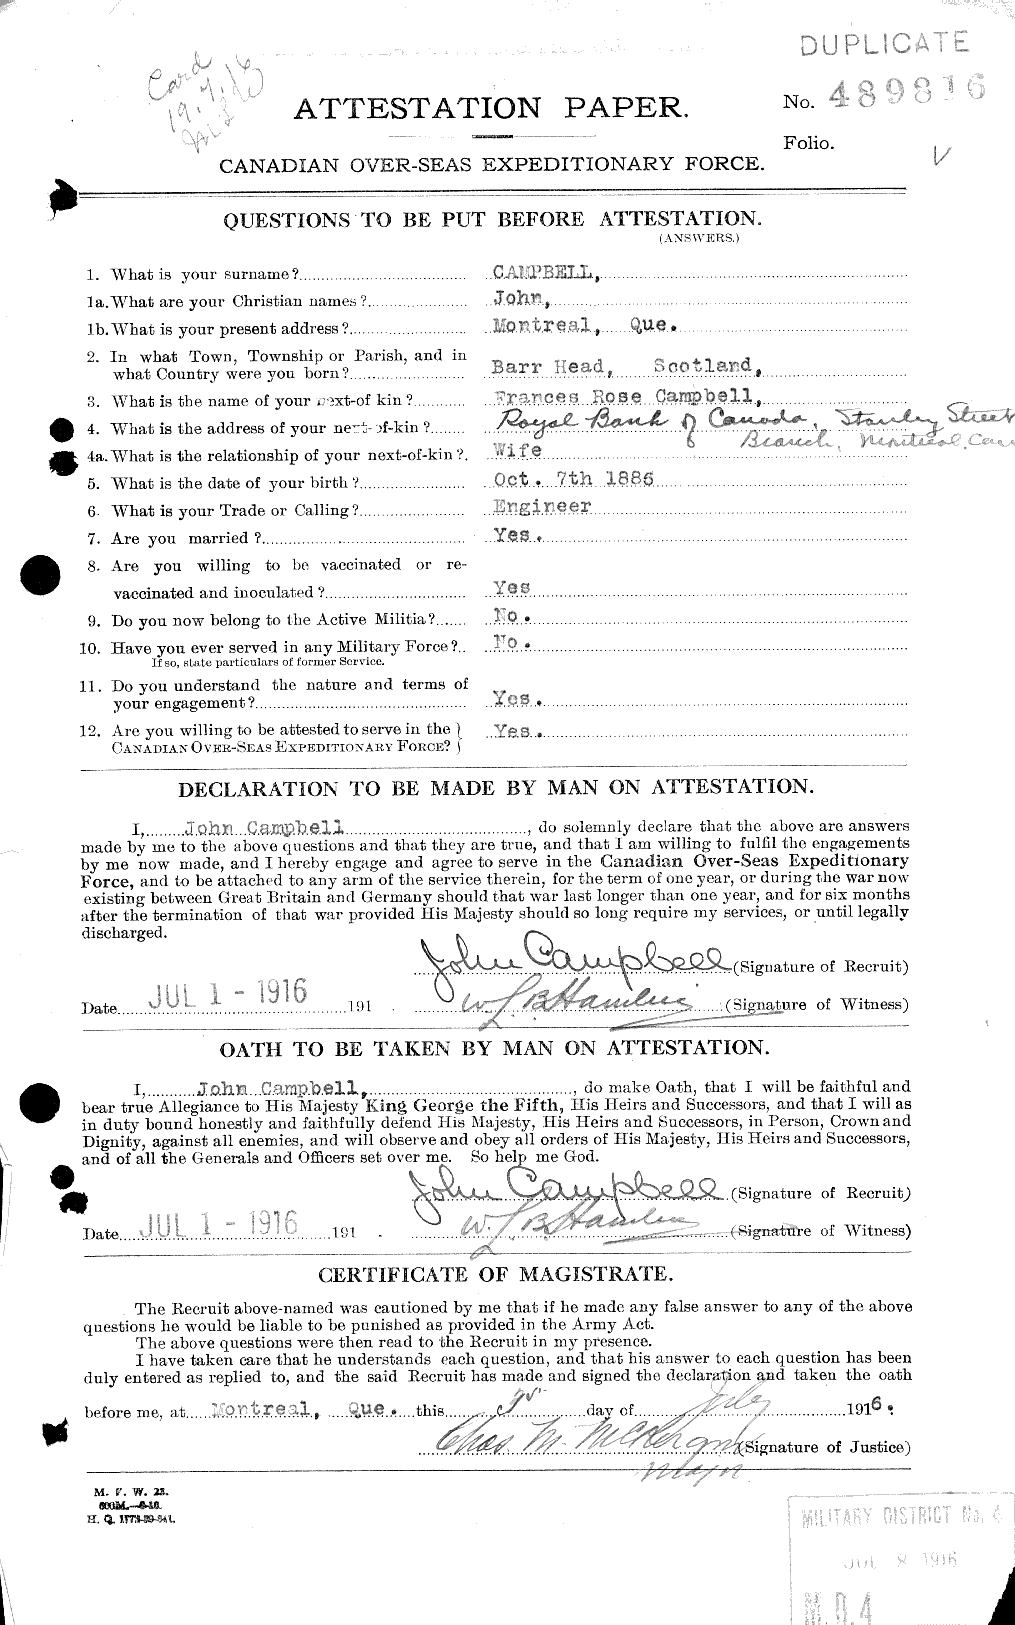 Dossiers du Personnel de la Première Guerre mondiale - CEC 006838a